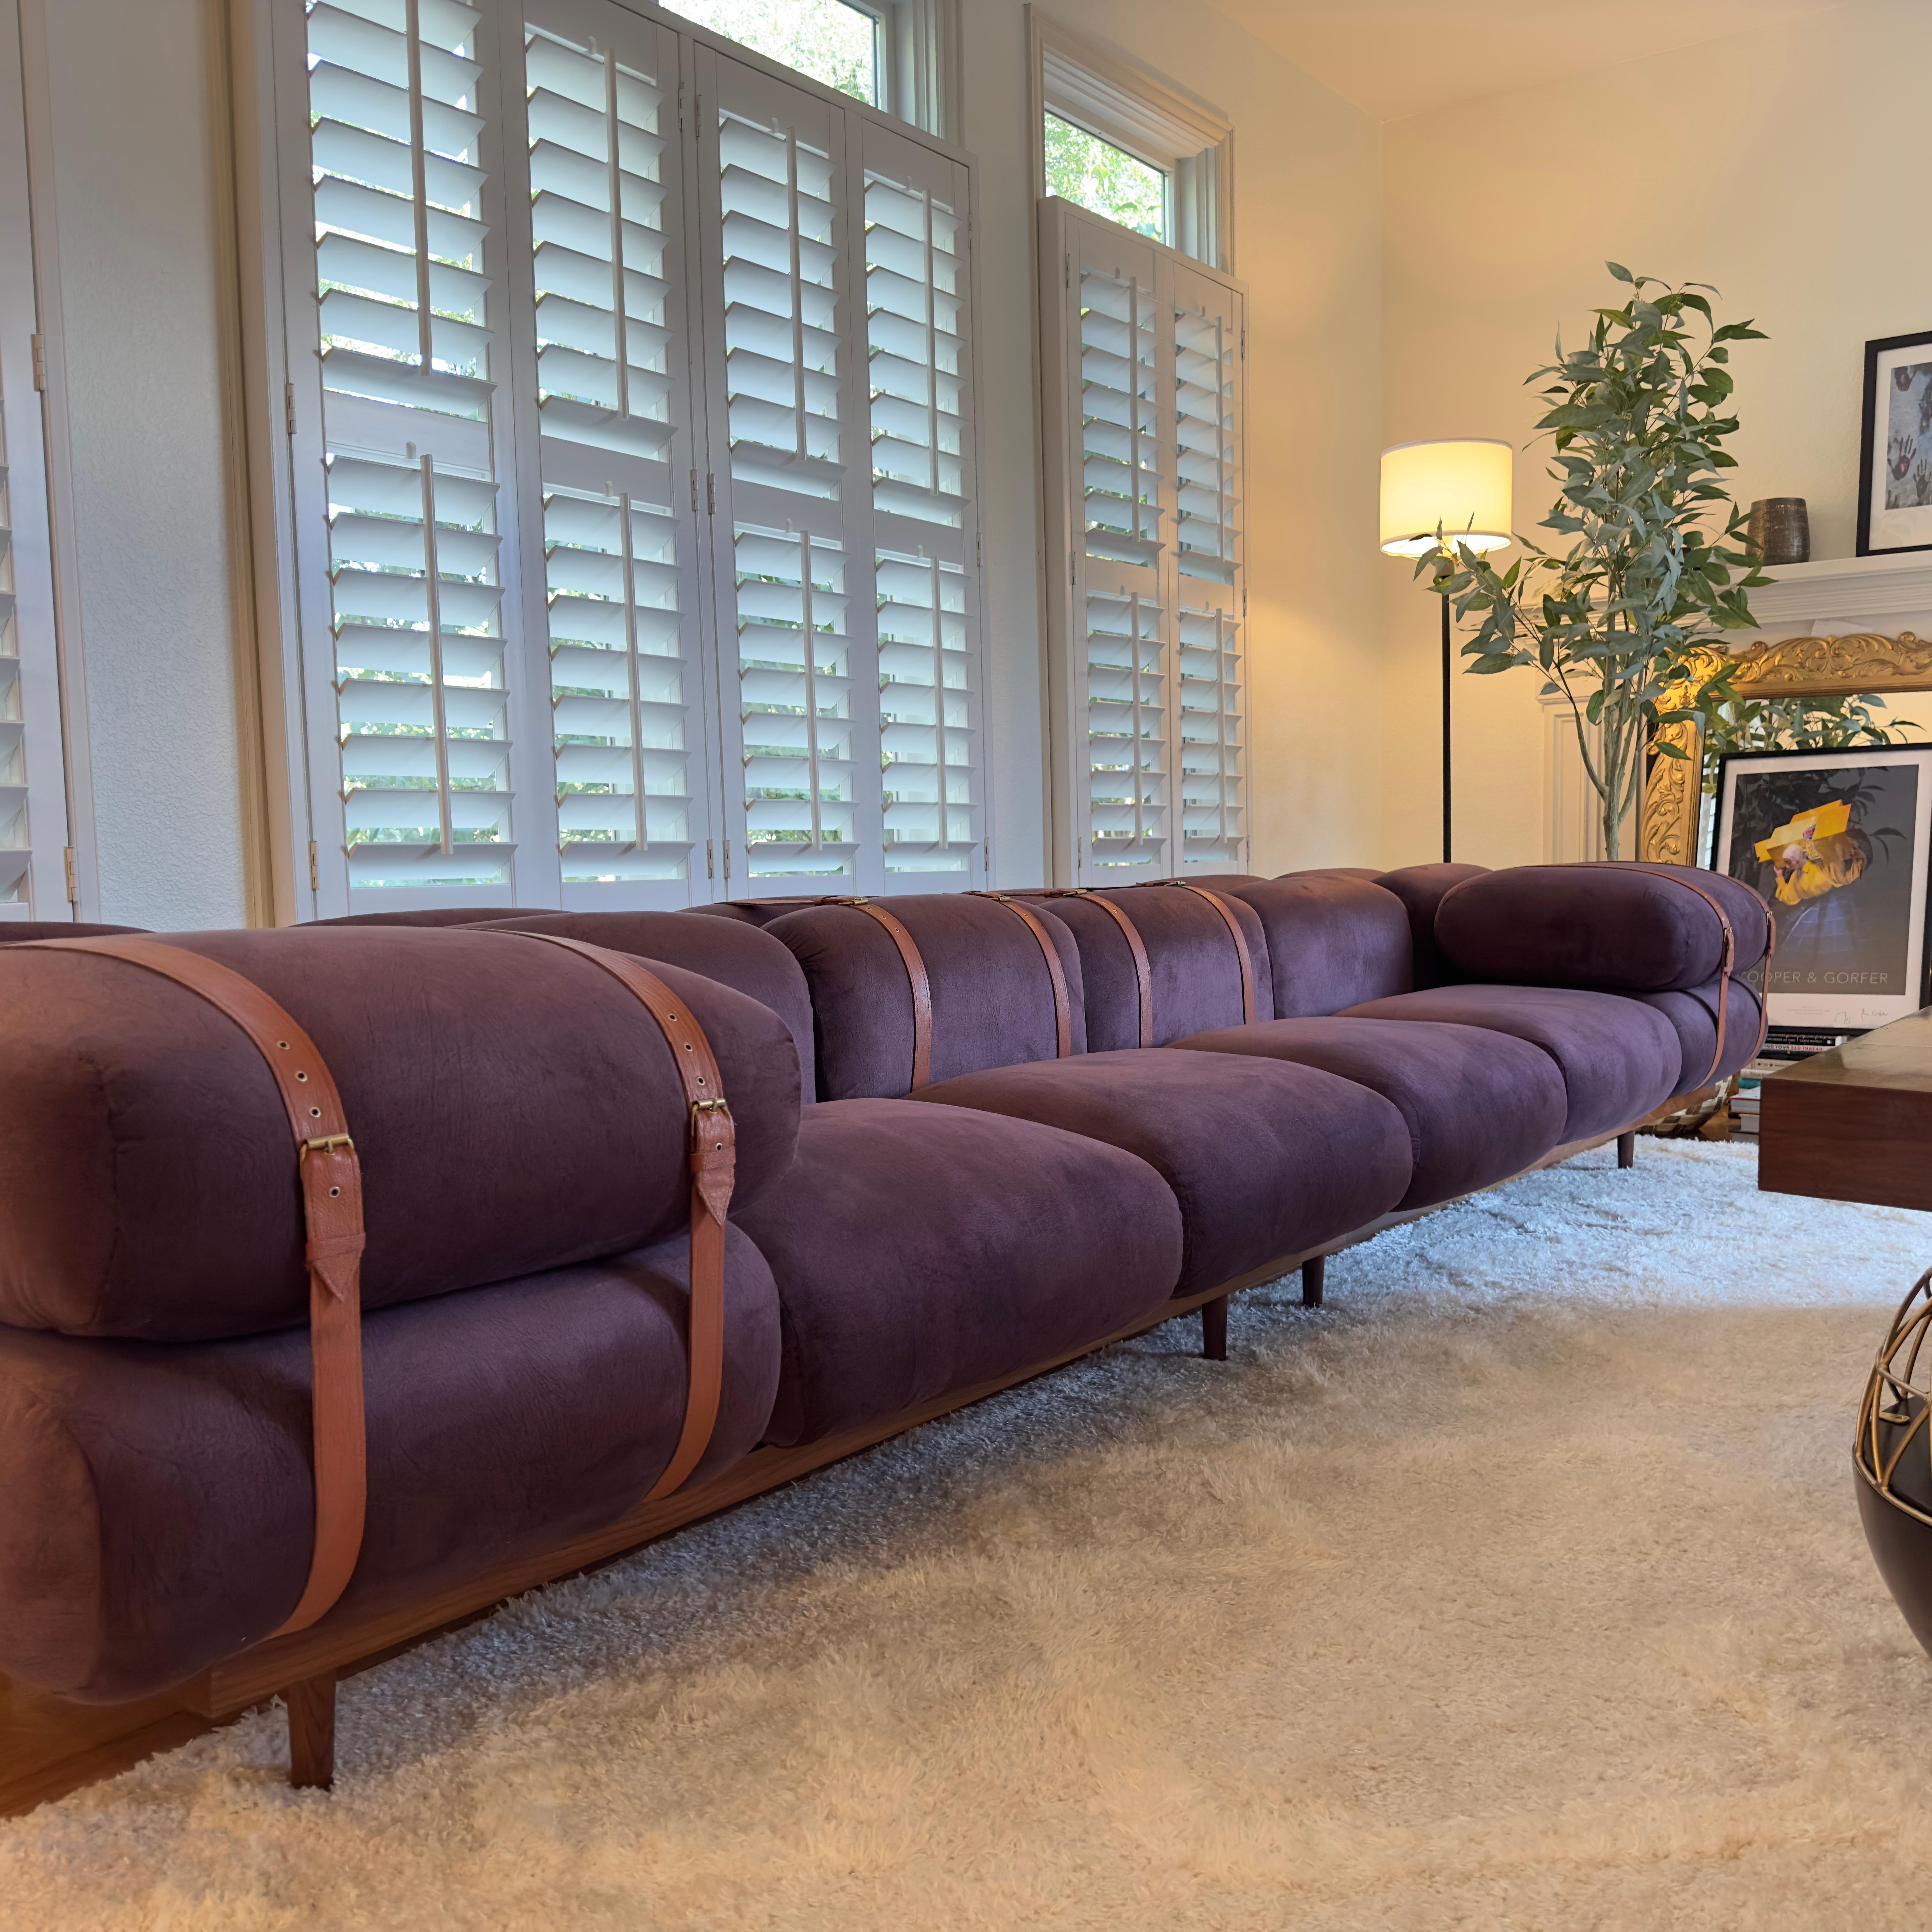 Erleben Sie den ultimativen Luxus mit dem Bevel Sofa

Treten Sie ein in die Welt von Luxus und Raffinesse mit dem Bevel Sofa. Diese schlichte und elegante Sitzgruppe verwandelt Ihren Wohnbereich in eine warme und einladende Oase. Mit seiner reichen